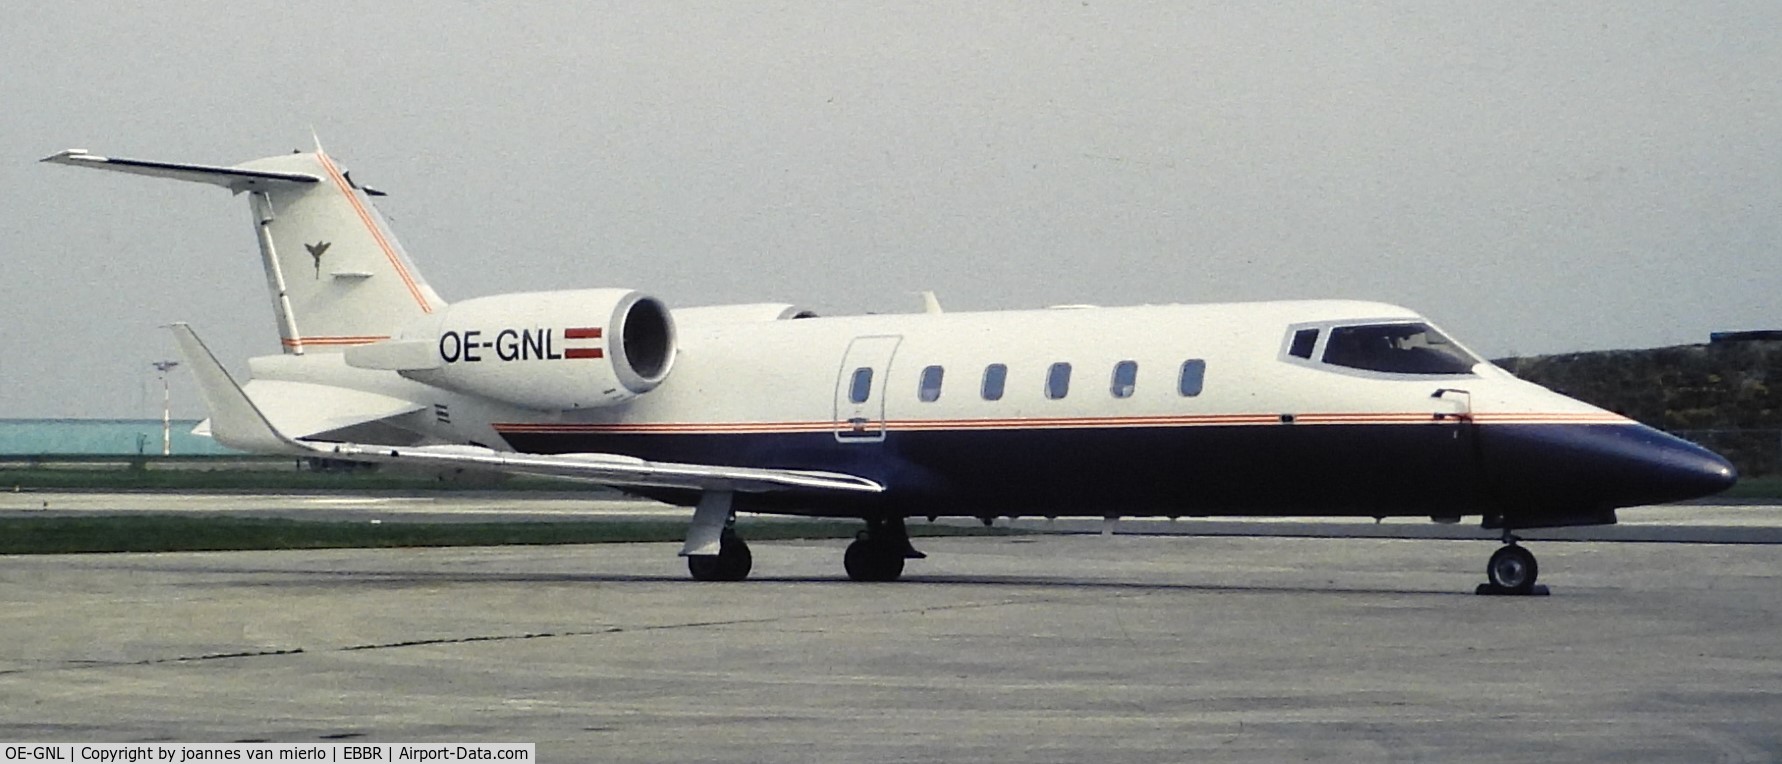 OE-GNL, 1994 Learjet 60 C/N 60-032, Ex-slide